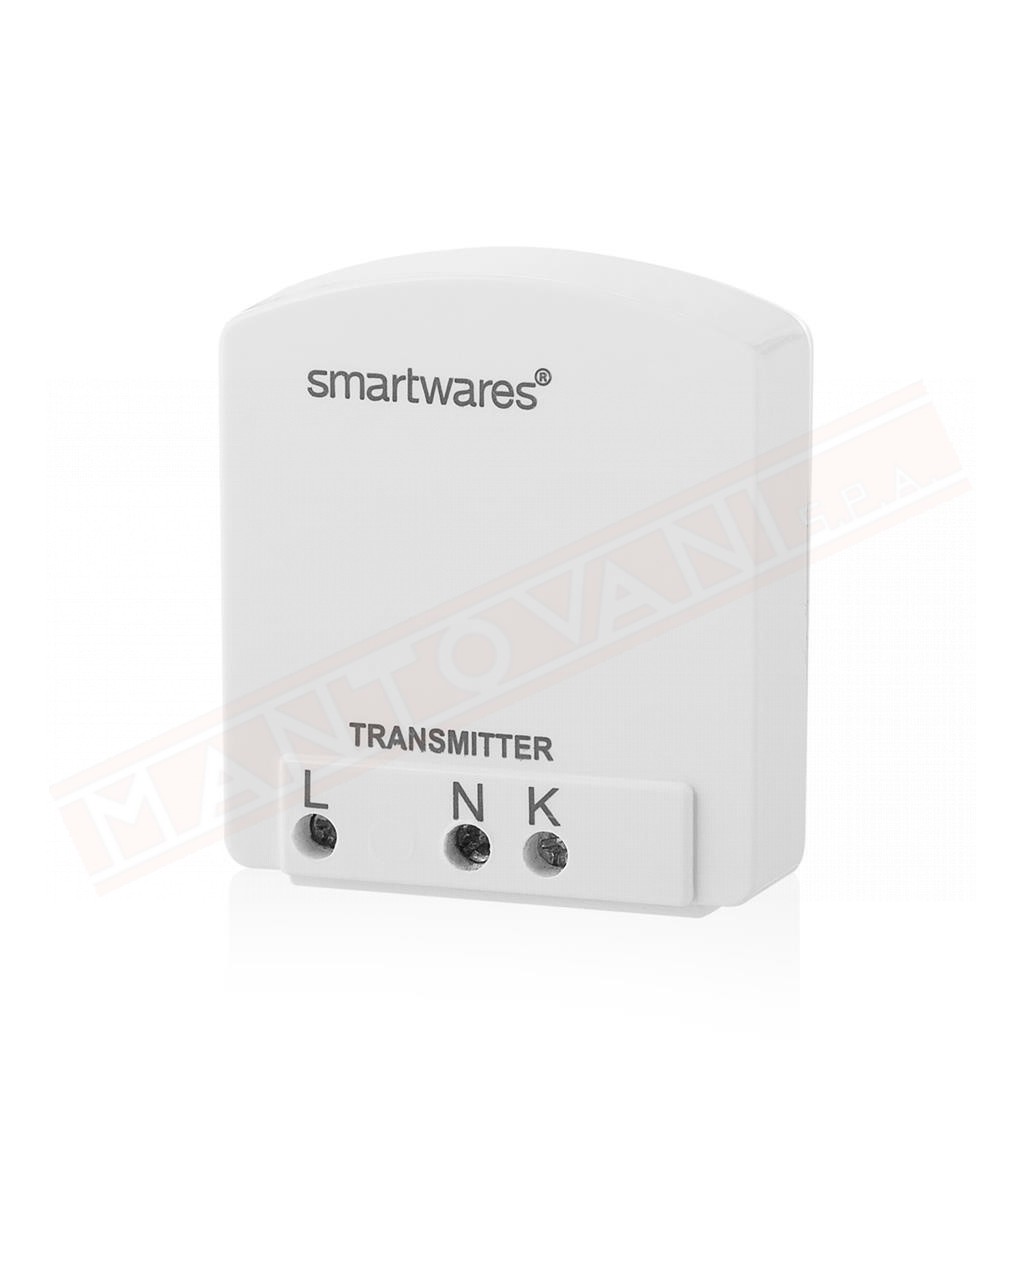 Smartwares smarthome basic interruttore comando wireless remoto da scatola da abbinare a qualsiasi interruttore